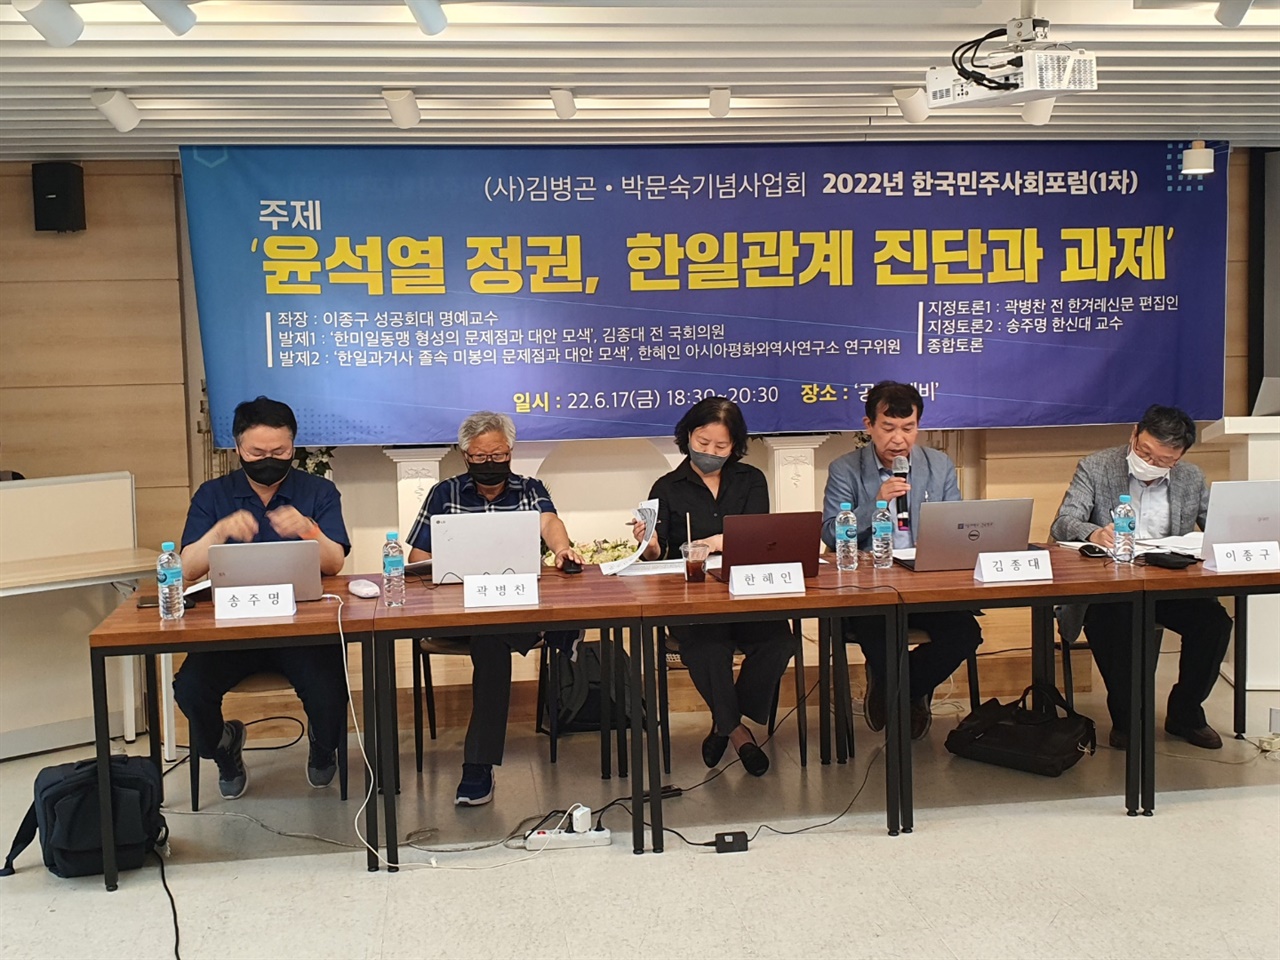 (사)김병곤 박문숙기념사업회 주최의 포럼에서 발표자들이 발제와 토론을 하고 있다.